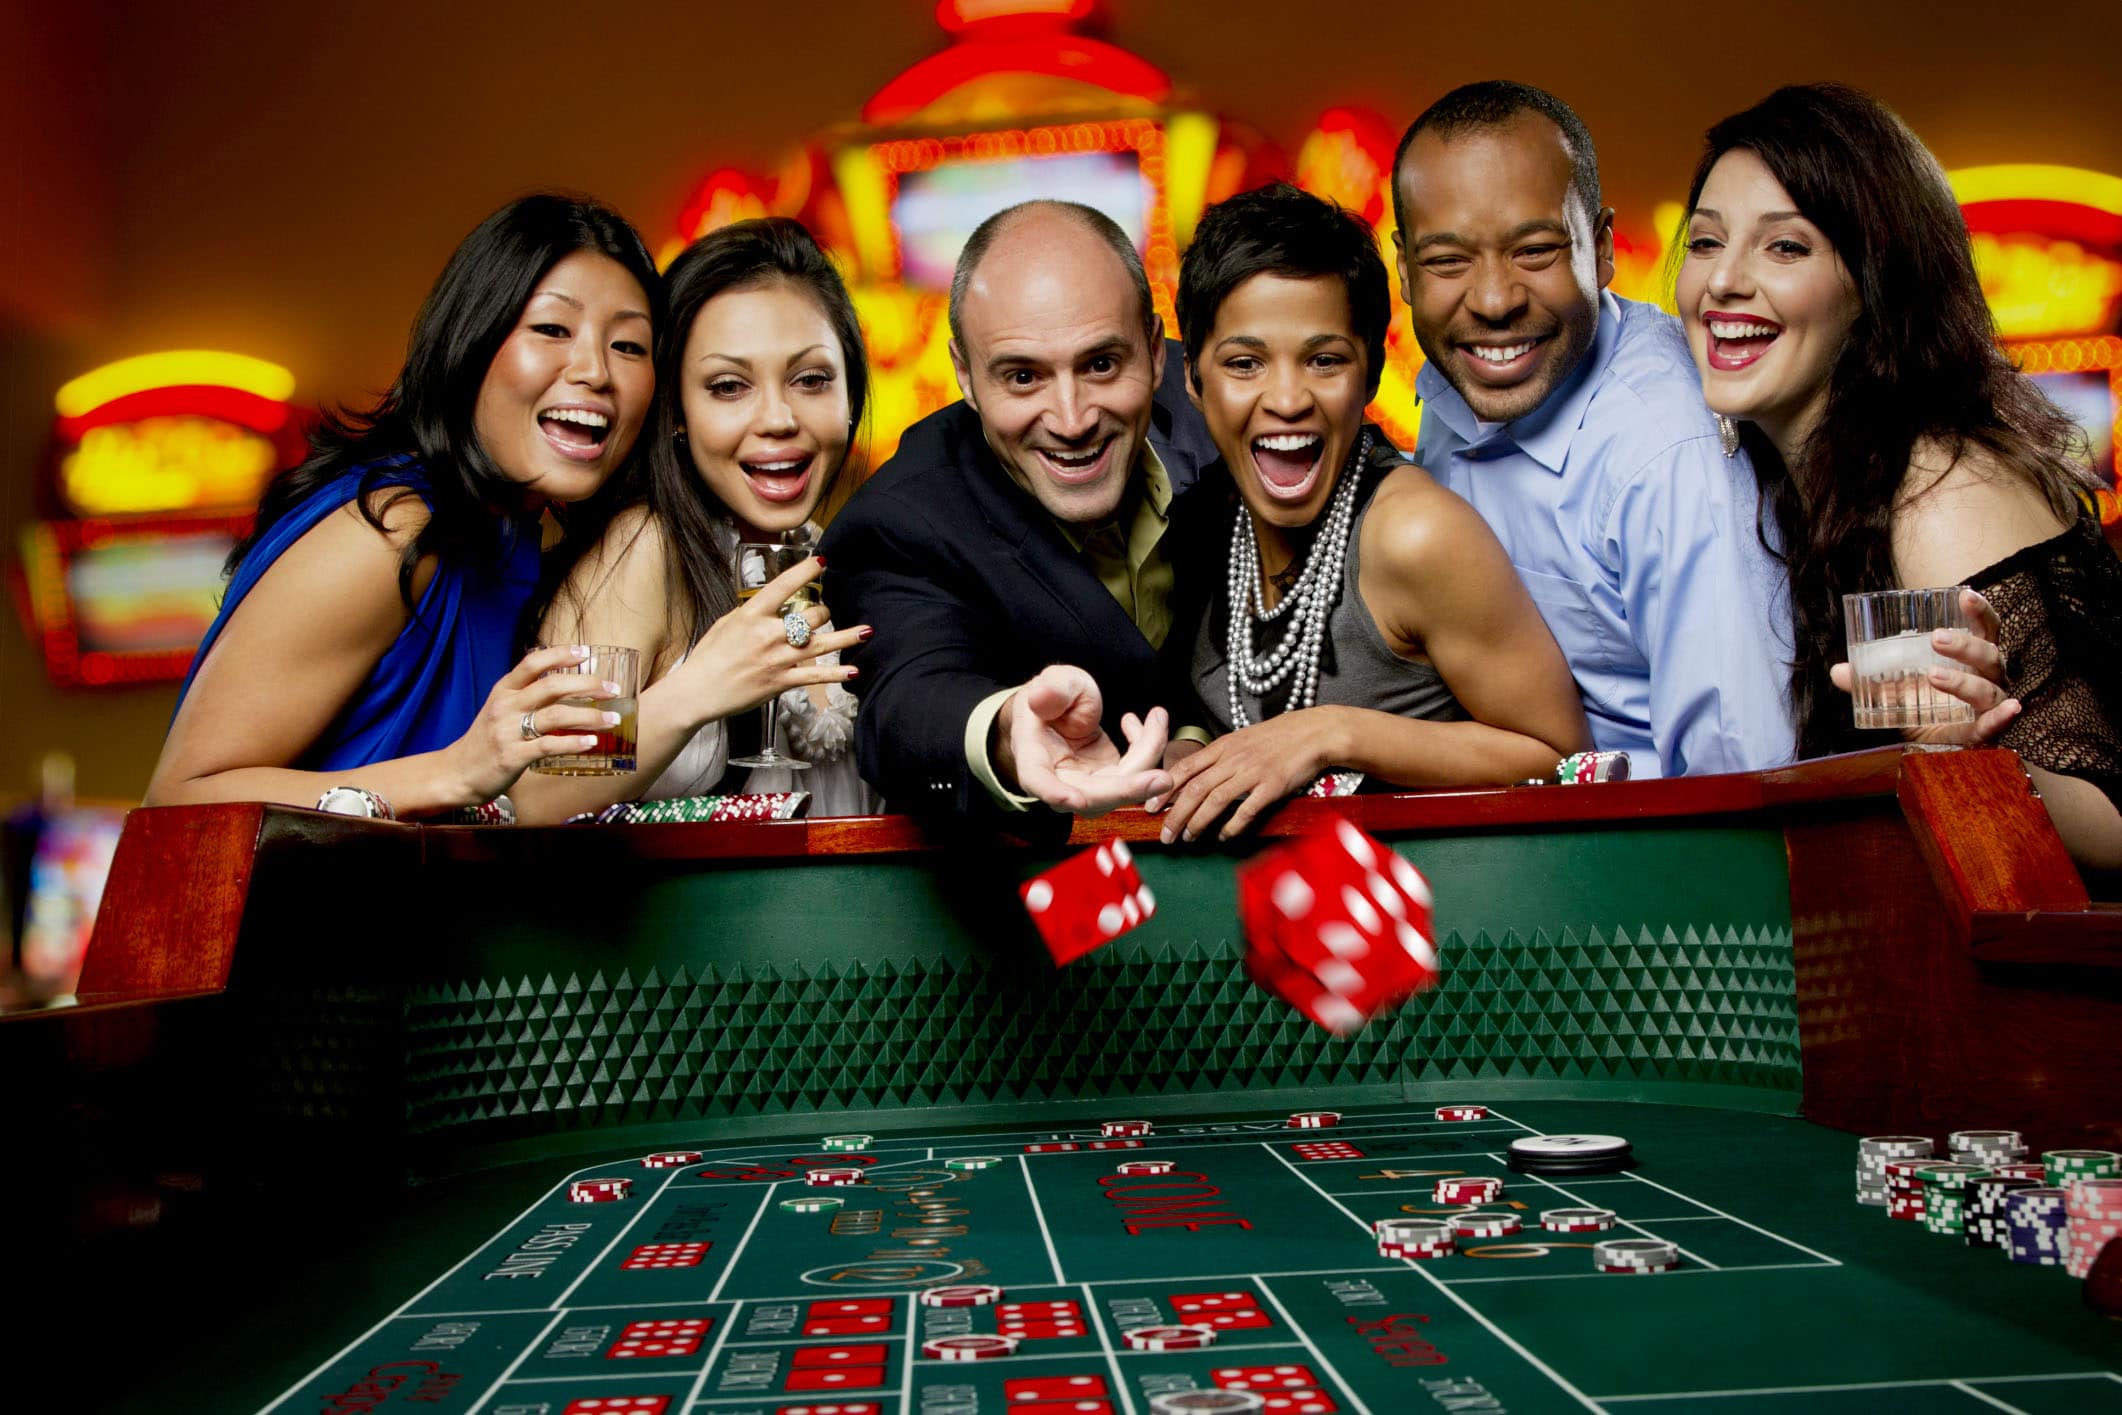 Obtenez de meilleurs résultats casinos en suivant 3 étapes simples